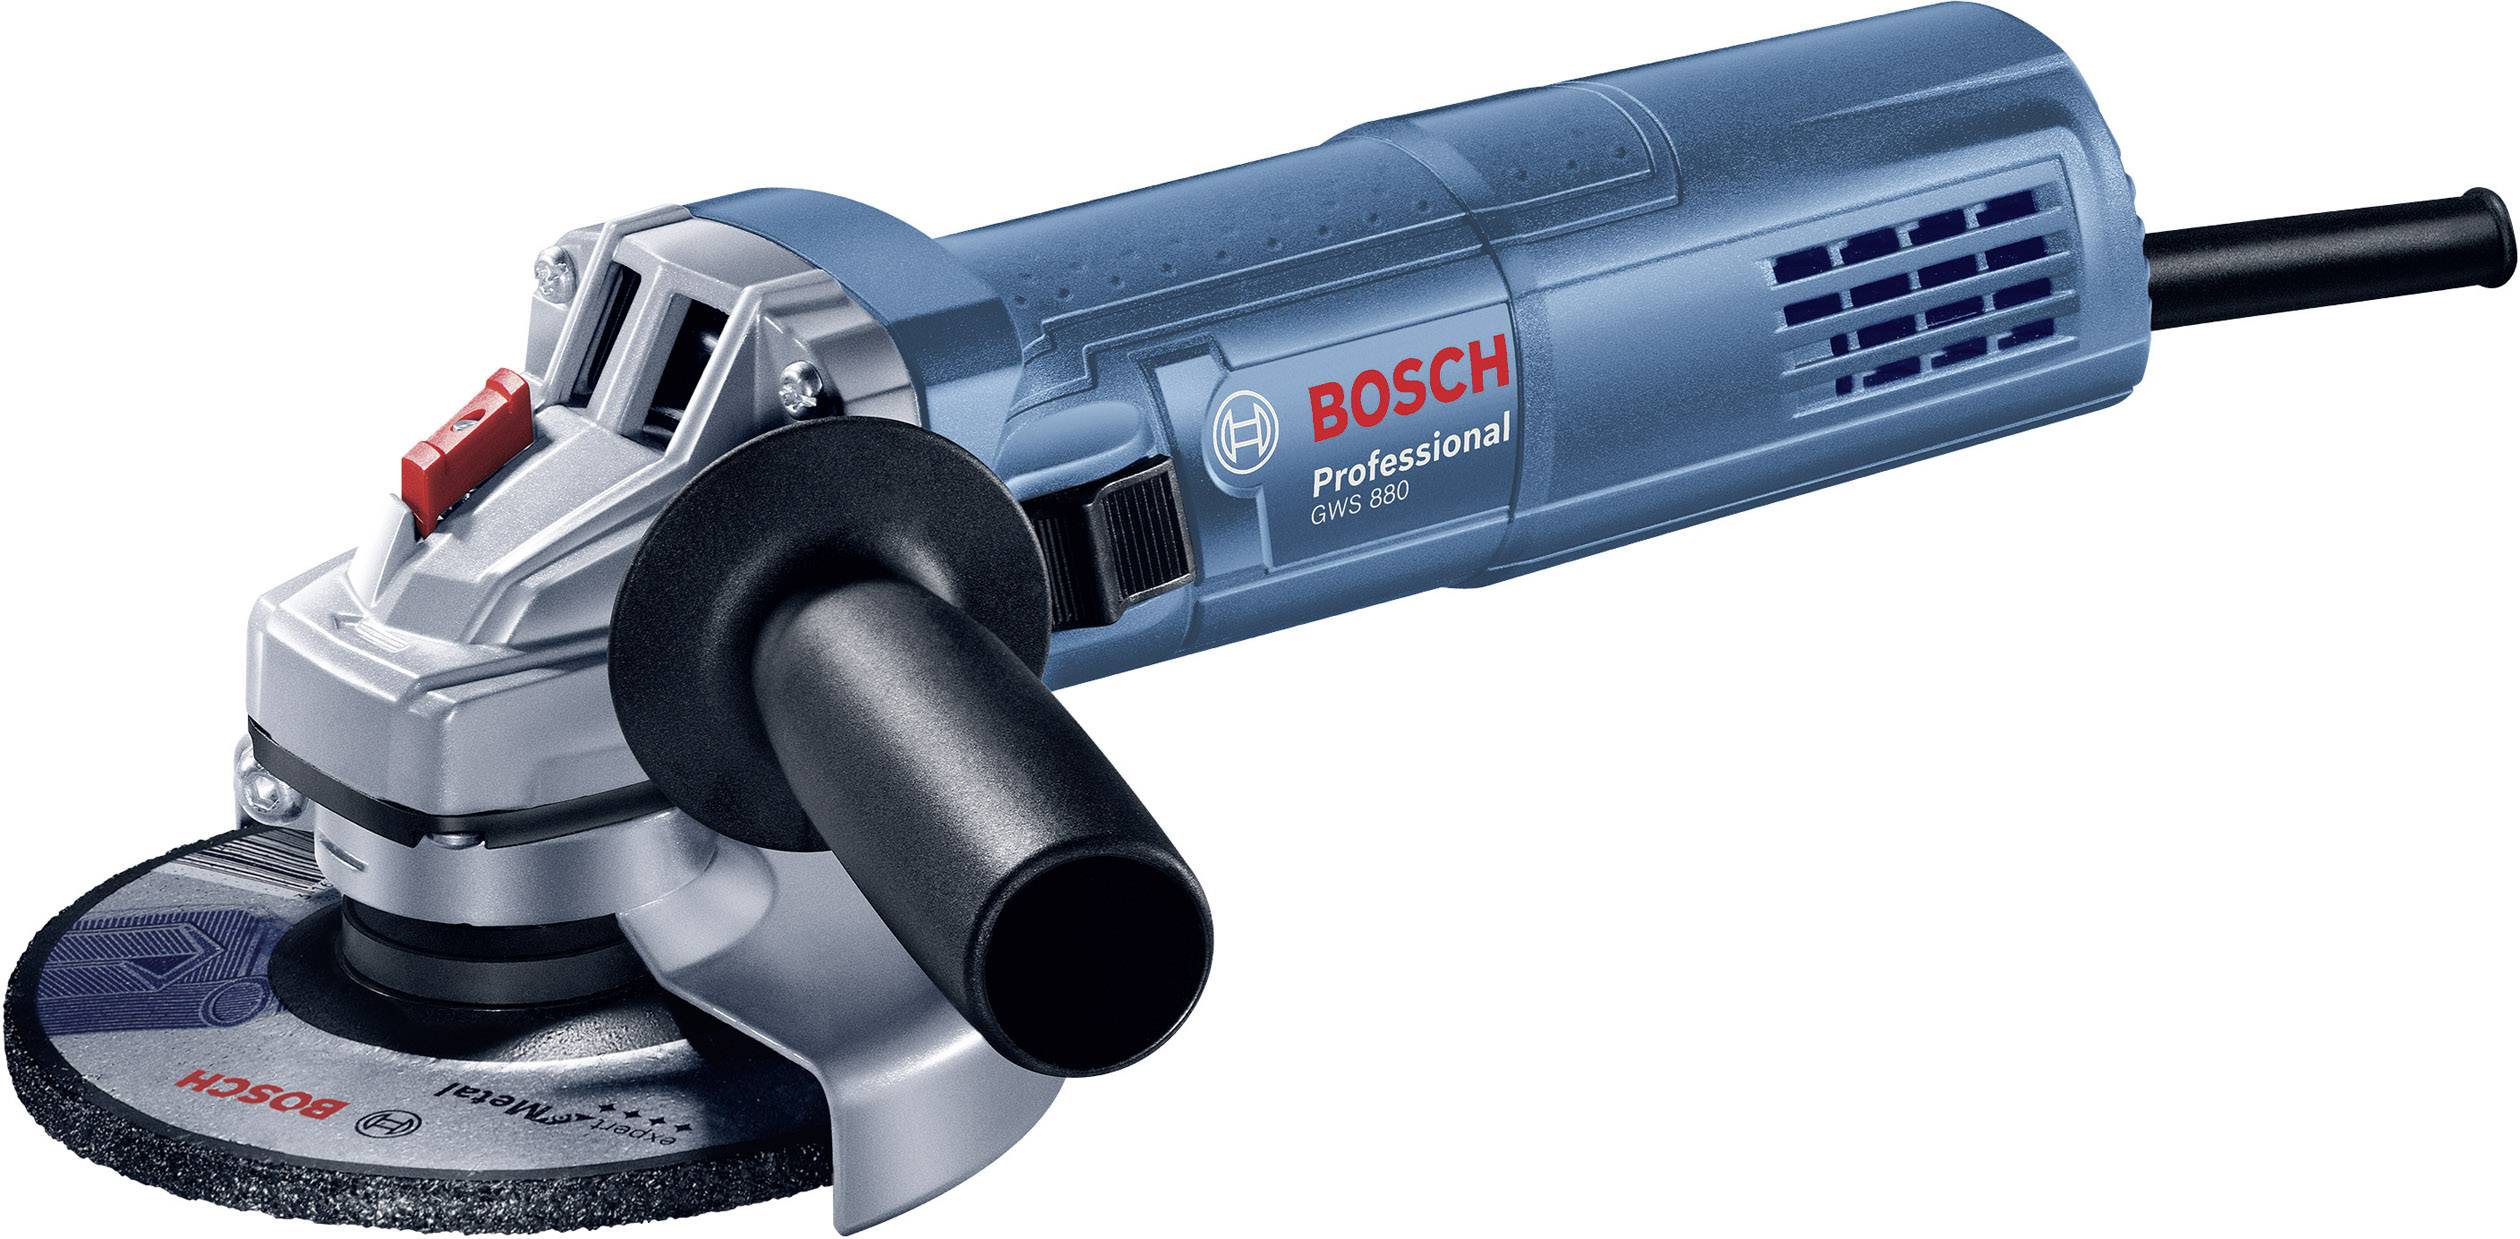 Bosch Professional GWS 880 grinder 125 mm 880 W |